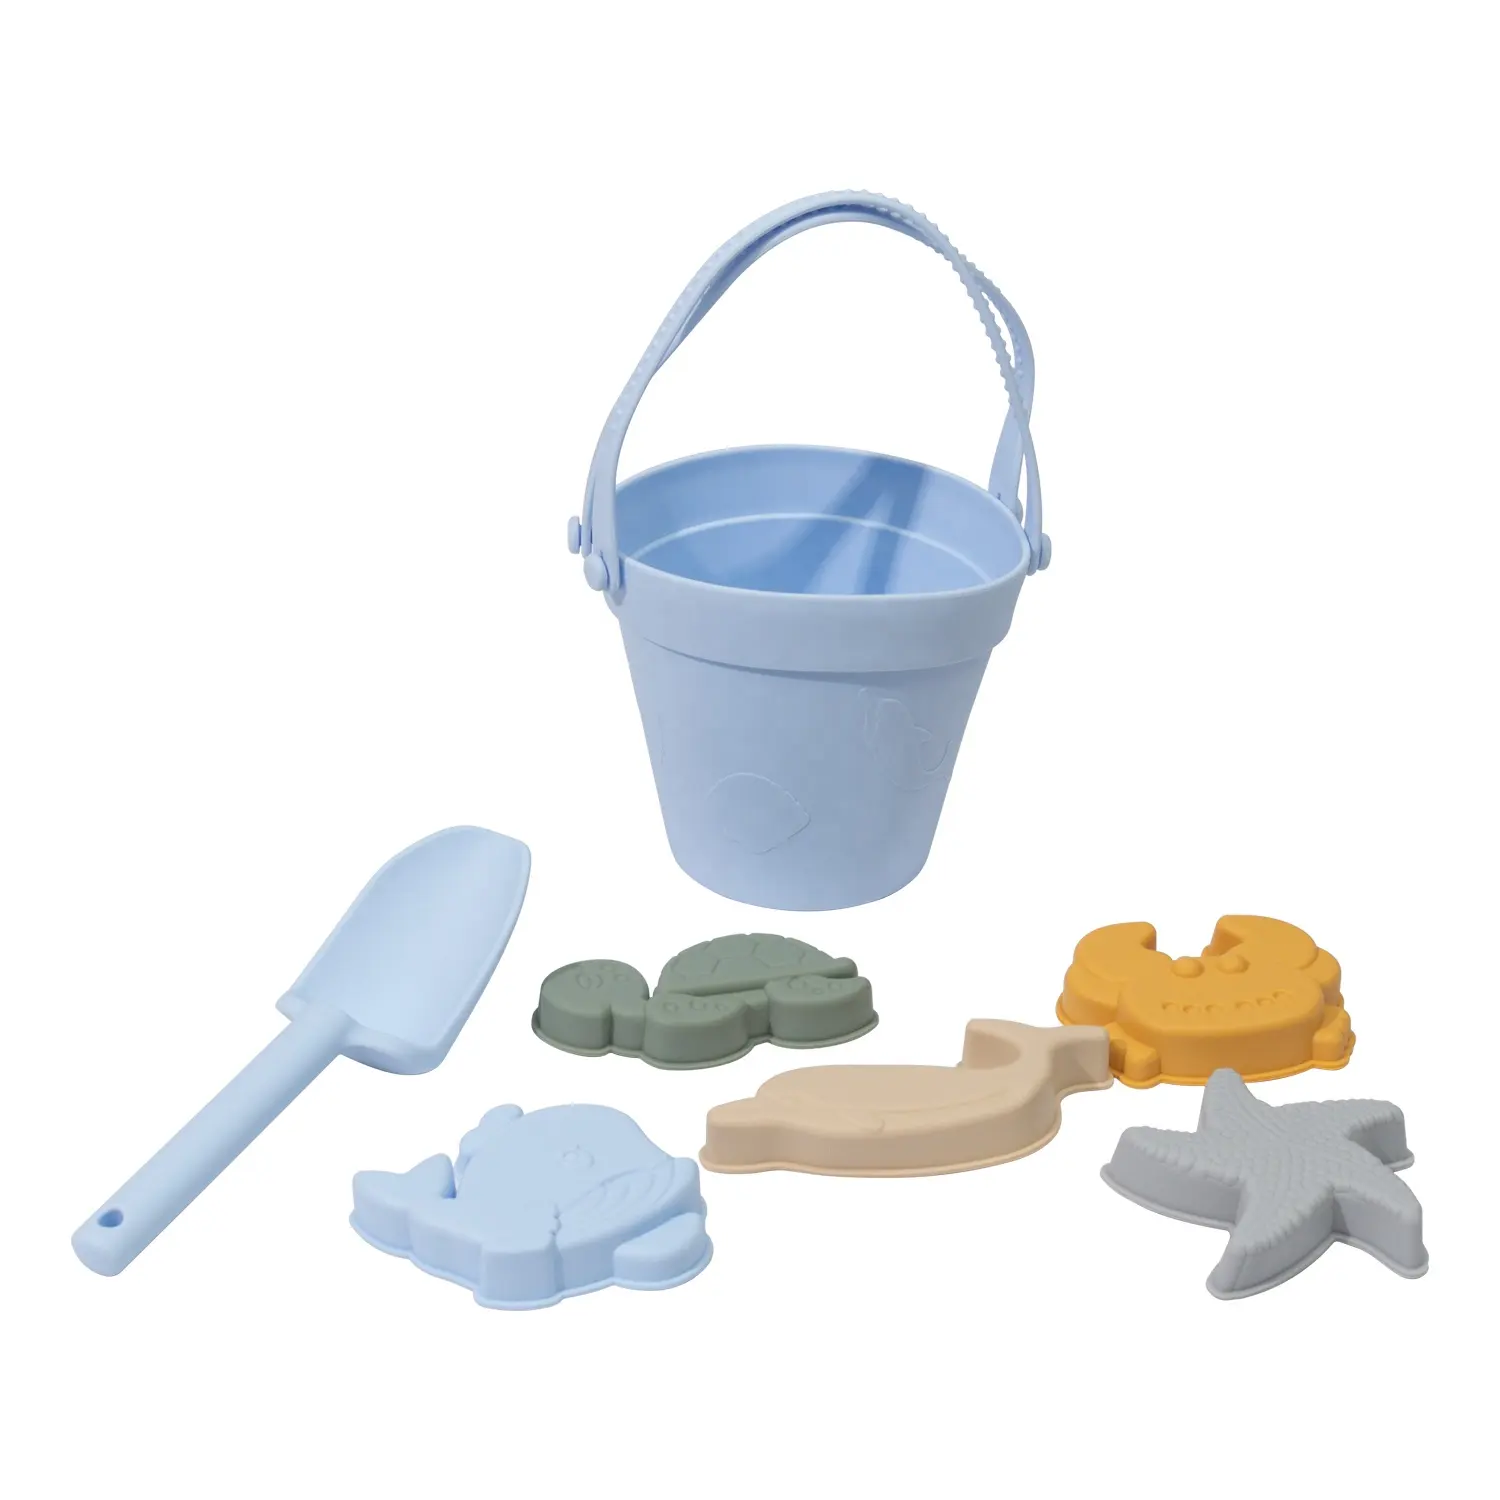 14 piezas de juguetes de playa de silicona juguetes de arena incluyen 2 cubos de silicona, 2 palas, 9 moldes de arena, 1 bolsa de playa para niños niñas